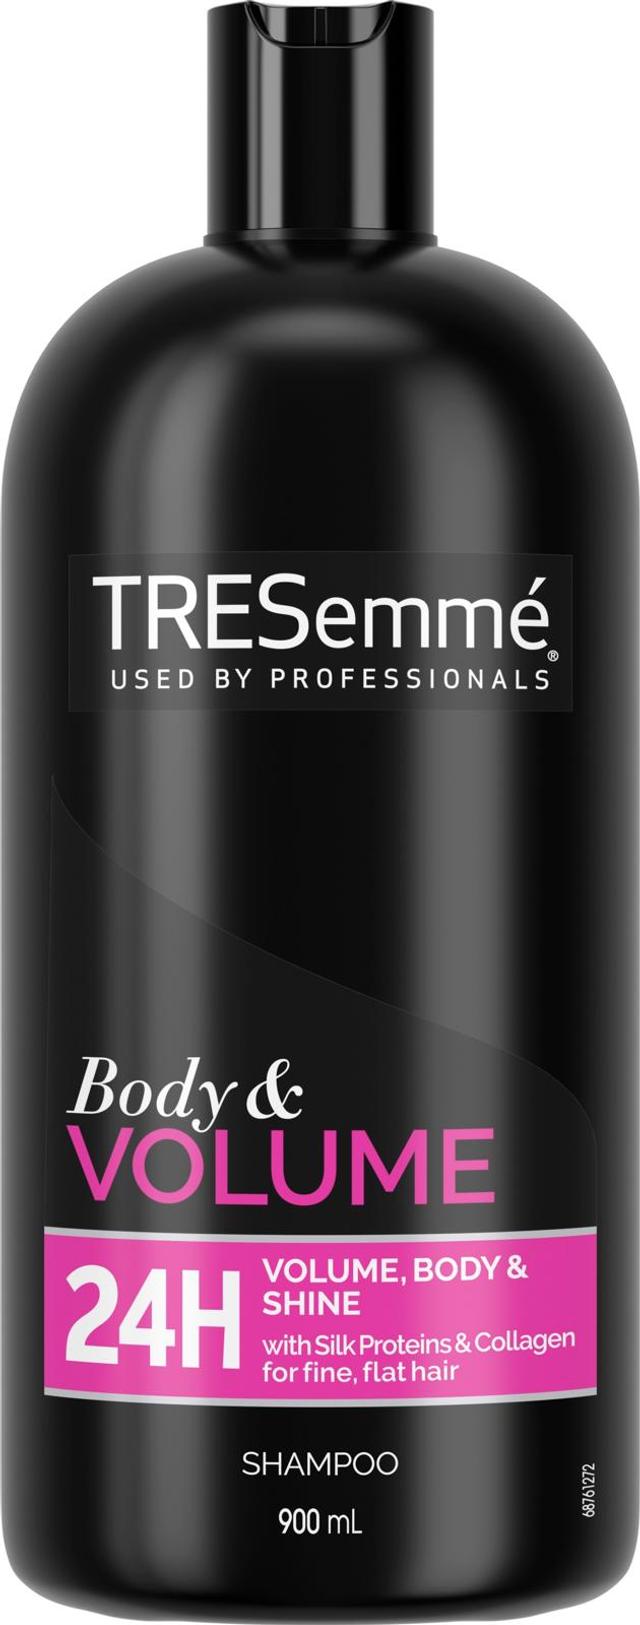 TRESemmé Body & Volume Shampoo Kiiltävät ja tuuheat hiukset 24 tunnin ajan 900 ml